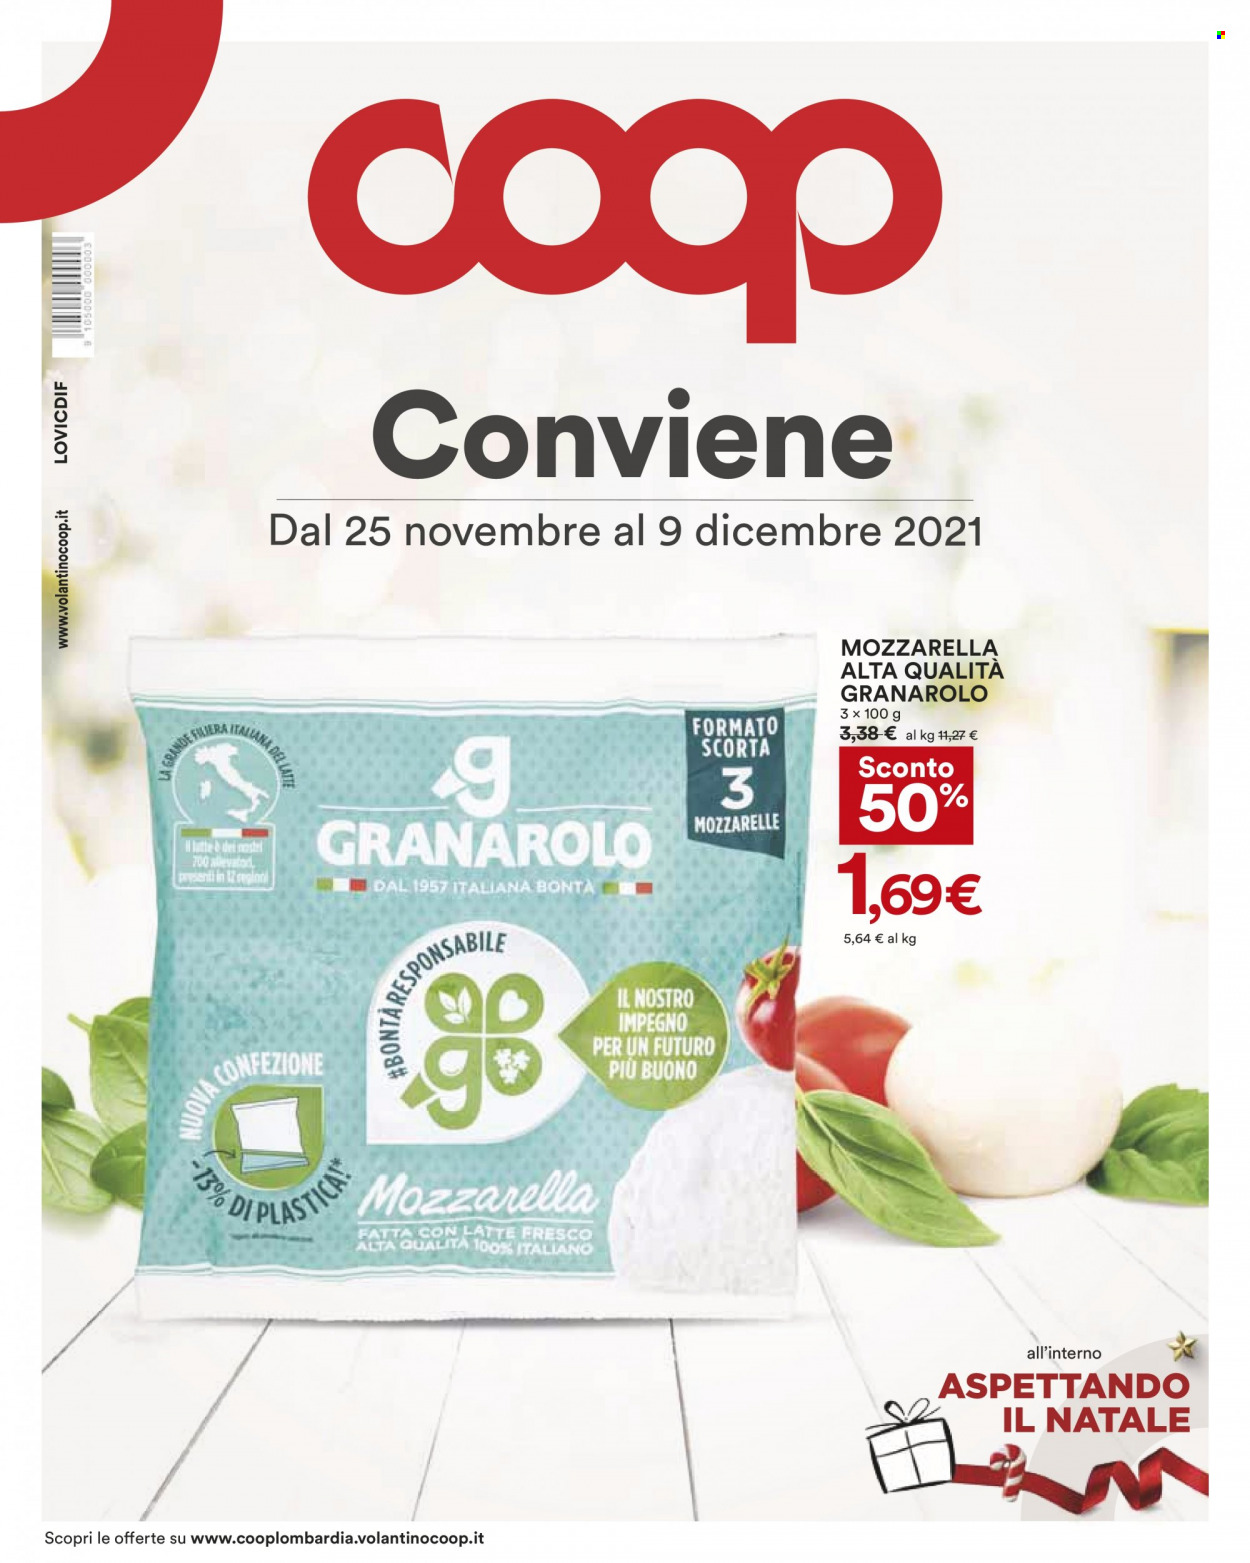 thumbnail - Volantino Coop - 25/11/2021 - 9/12/2021 - Prodotti in offerta - Granarolo, formaggio, mozzarella. Pagina 1.